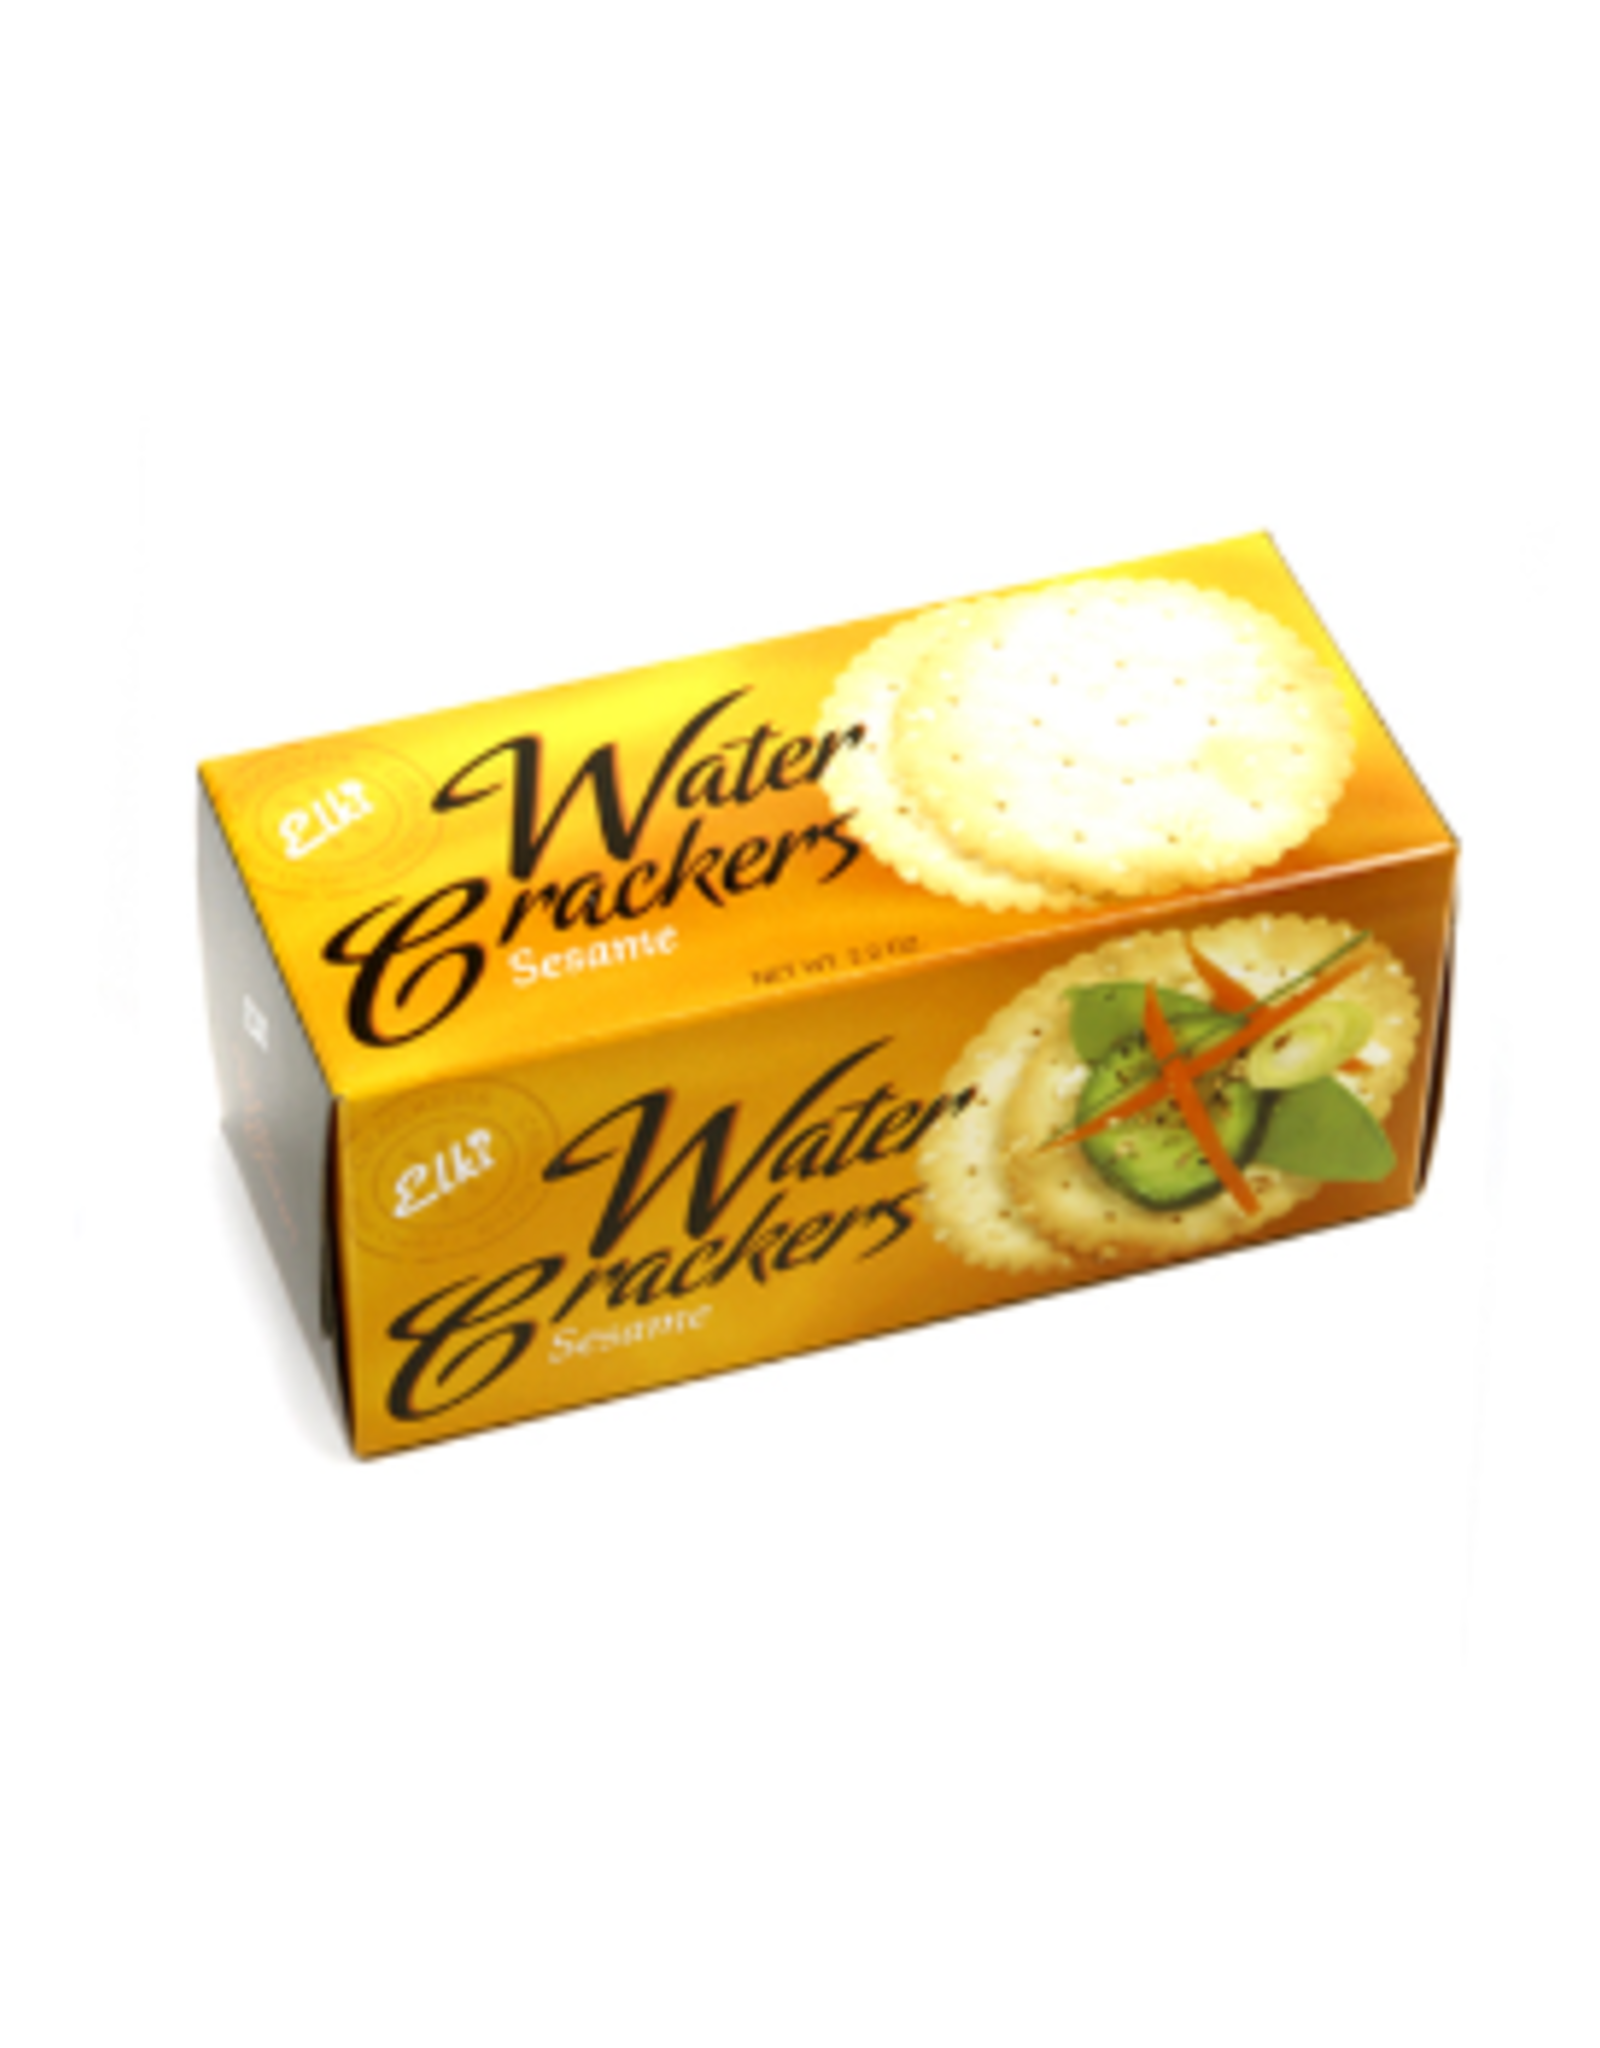 Elki Elki Sesame Water Crackers 2.2 oz